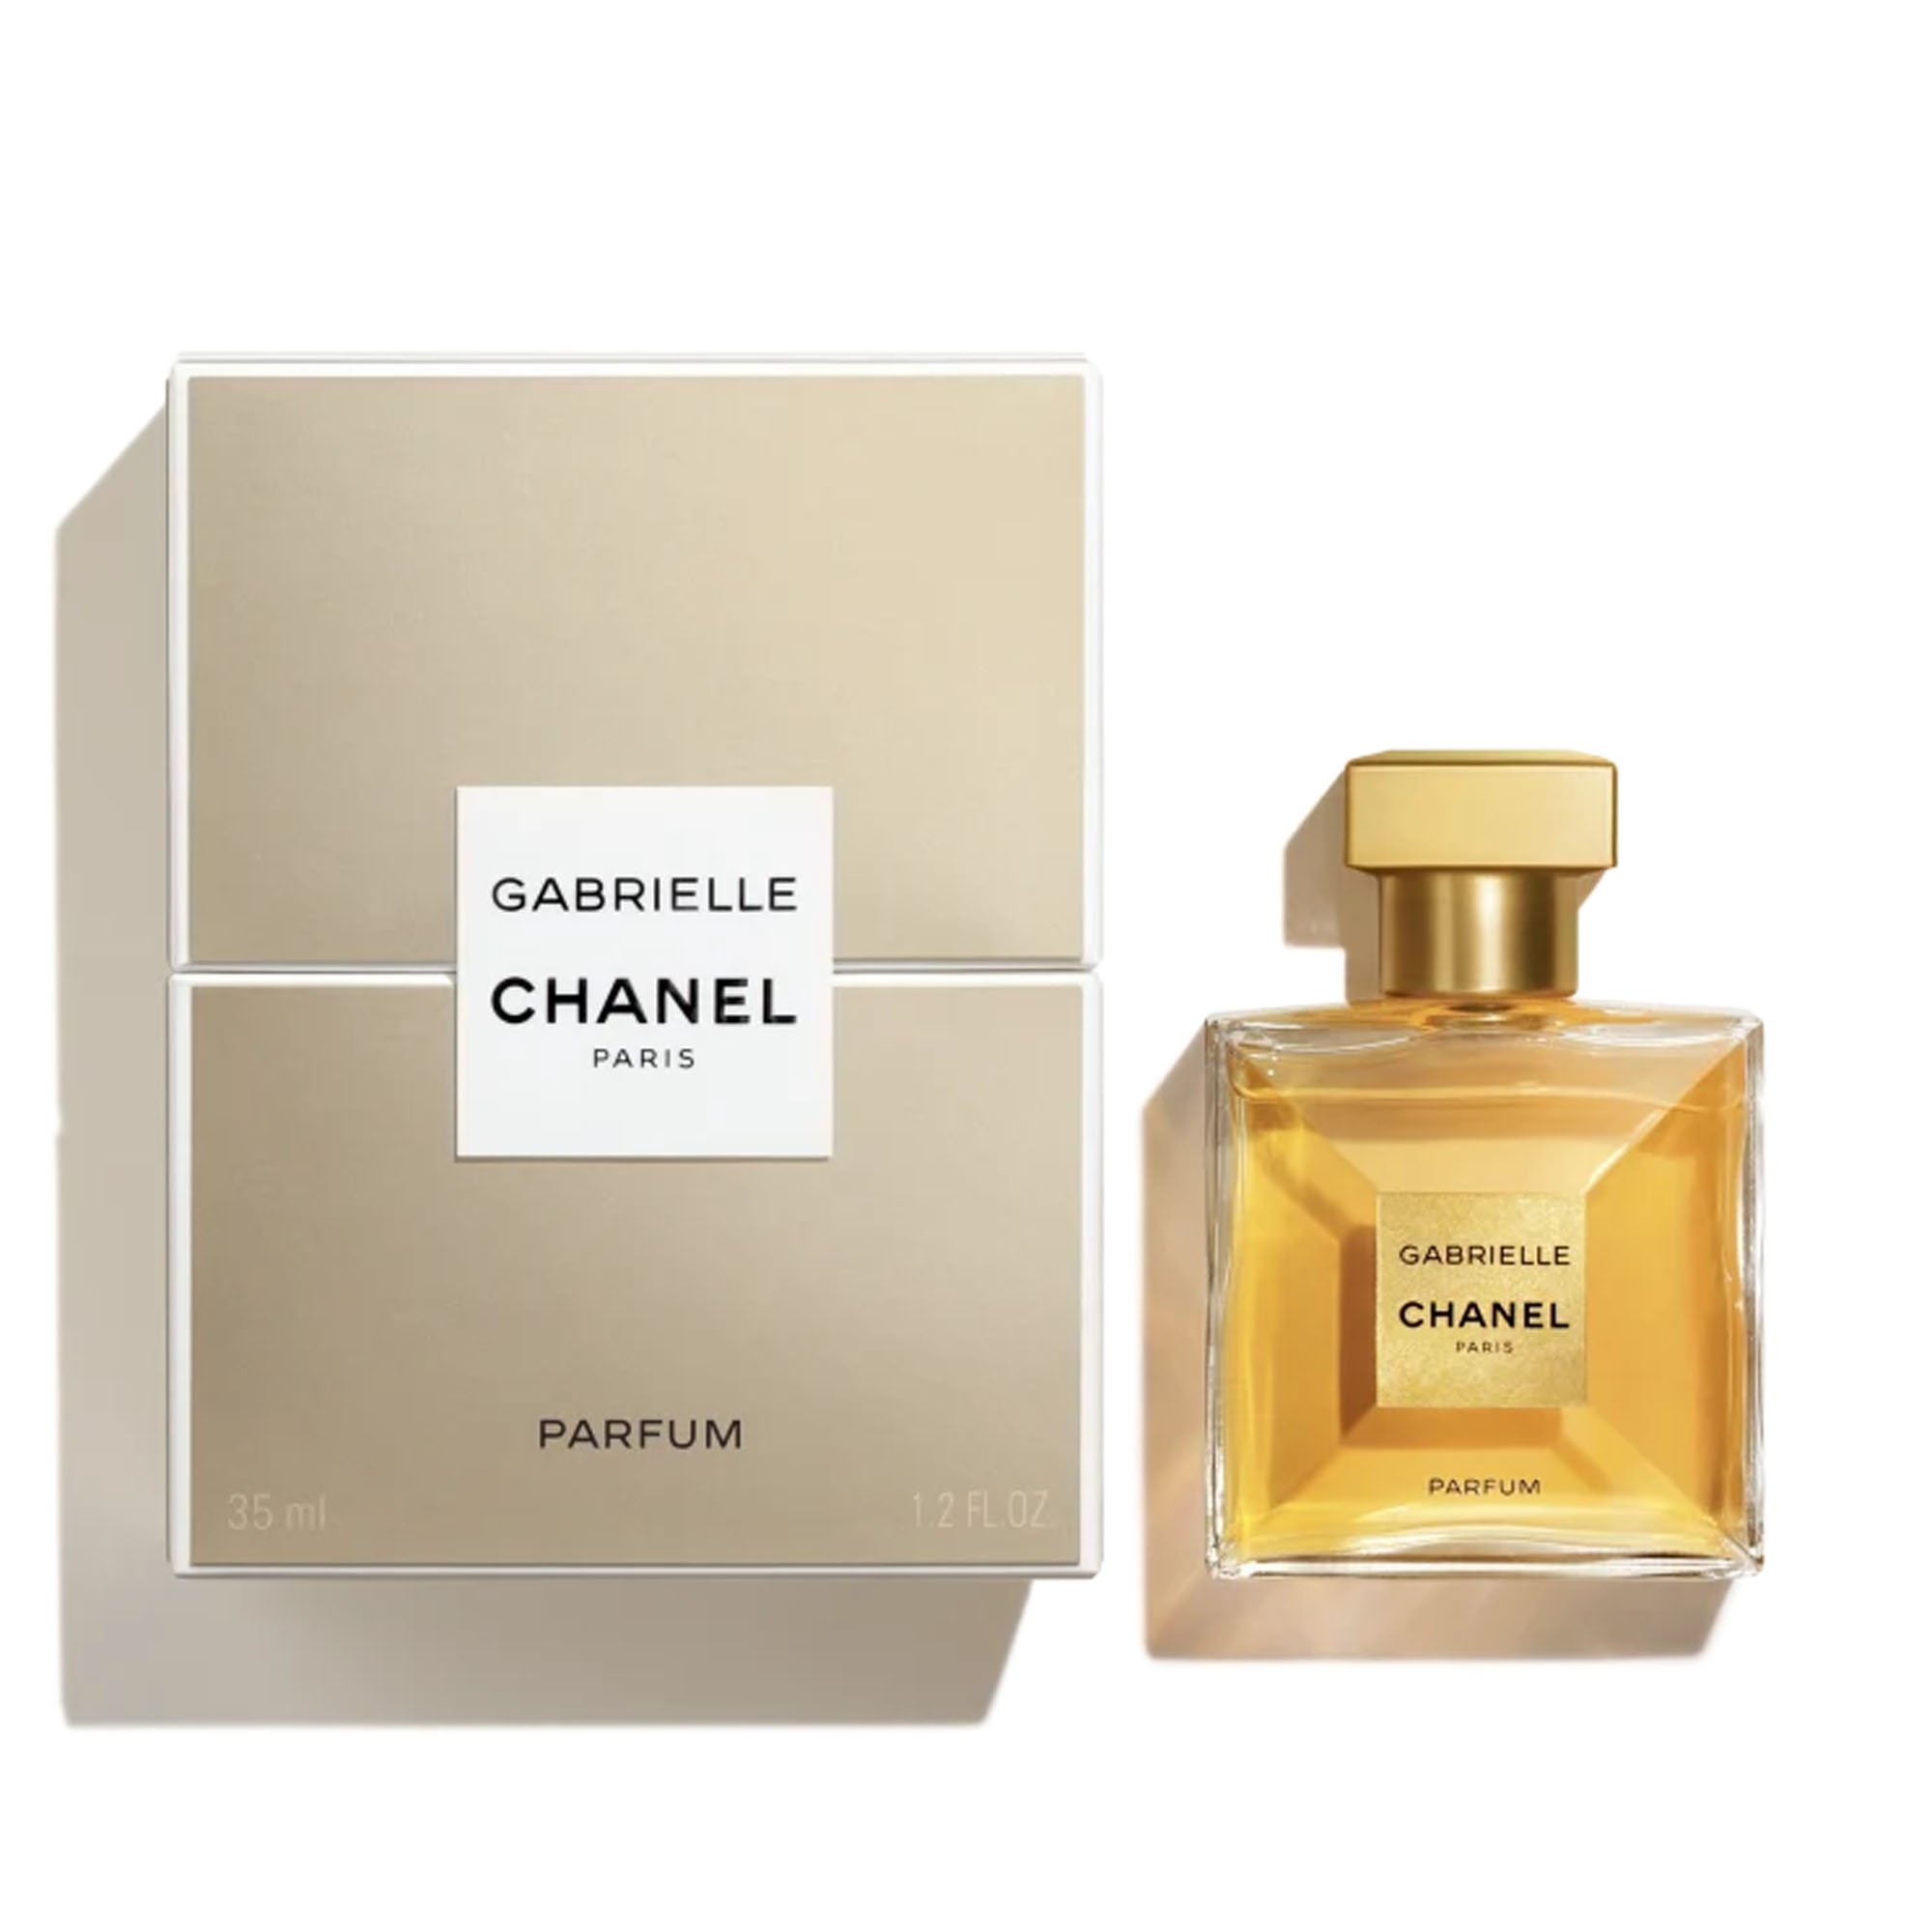 Chanel essence - April - Planet Parfum